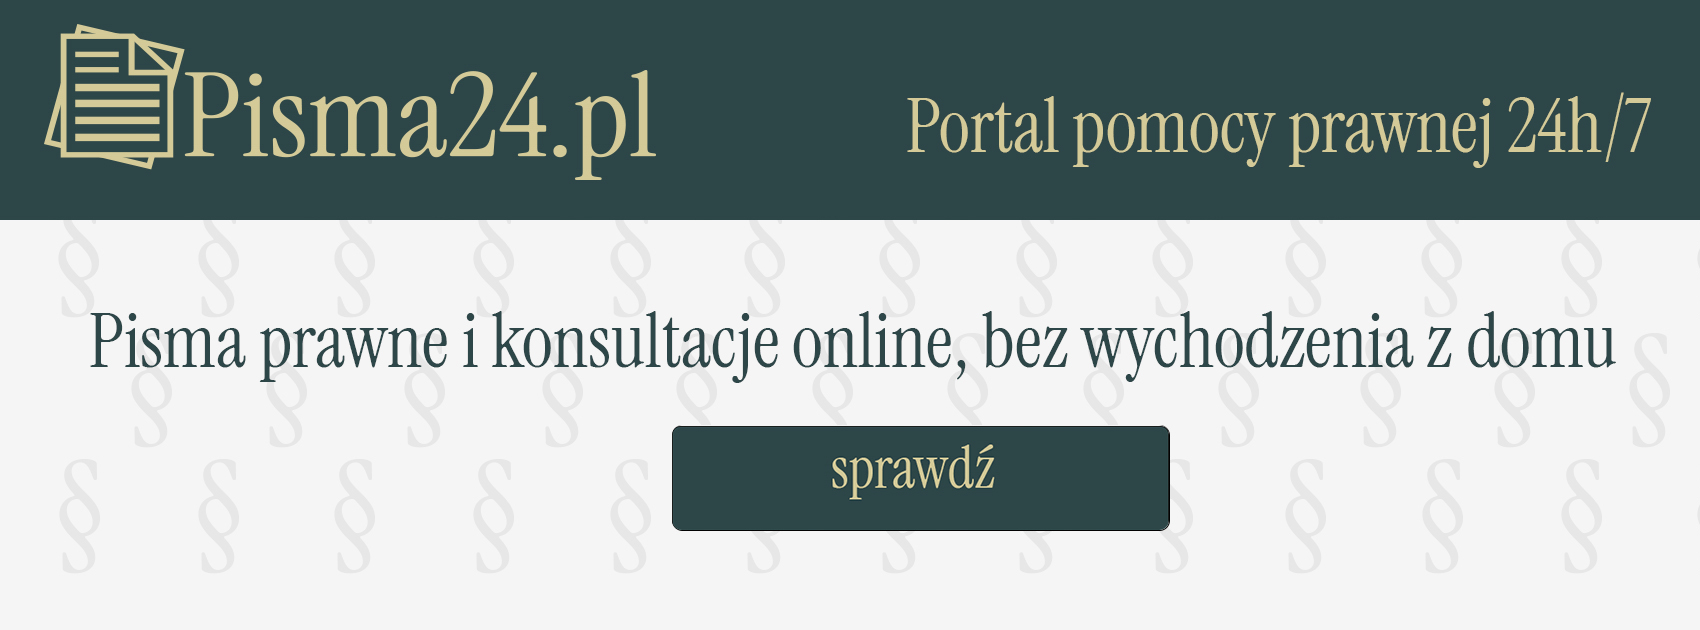 Pisma24.pl - pisma online